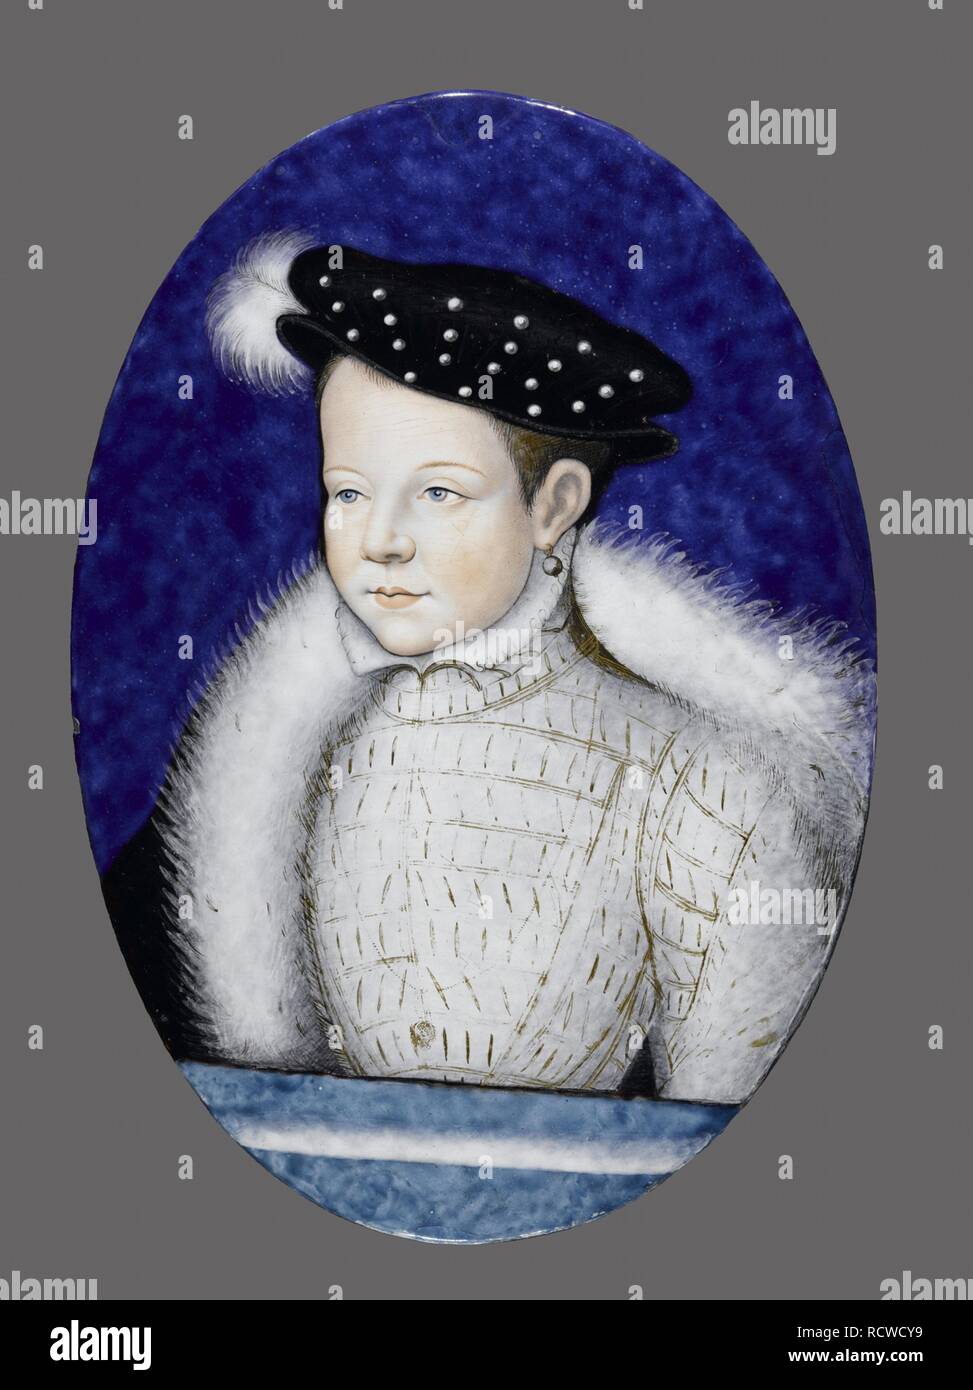 Portrait of future Francis II, King of France (1544-1560). Museum: Musee du Louvre, Paris. Author: Limousin (Limosin), Léonard. Stock Photo